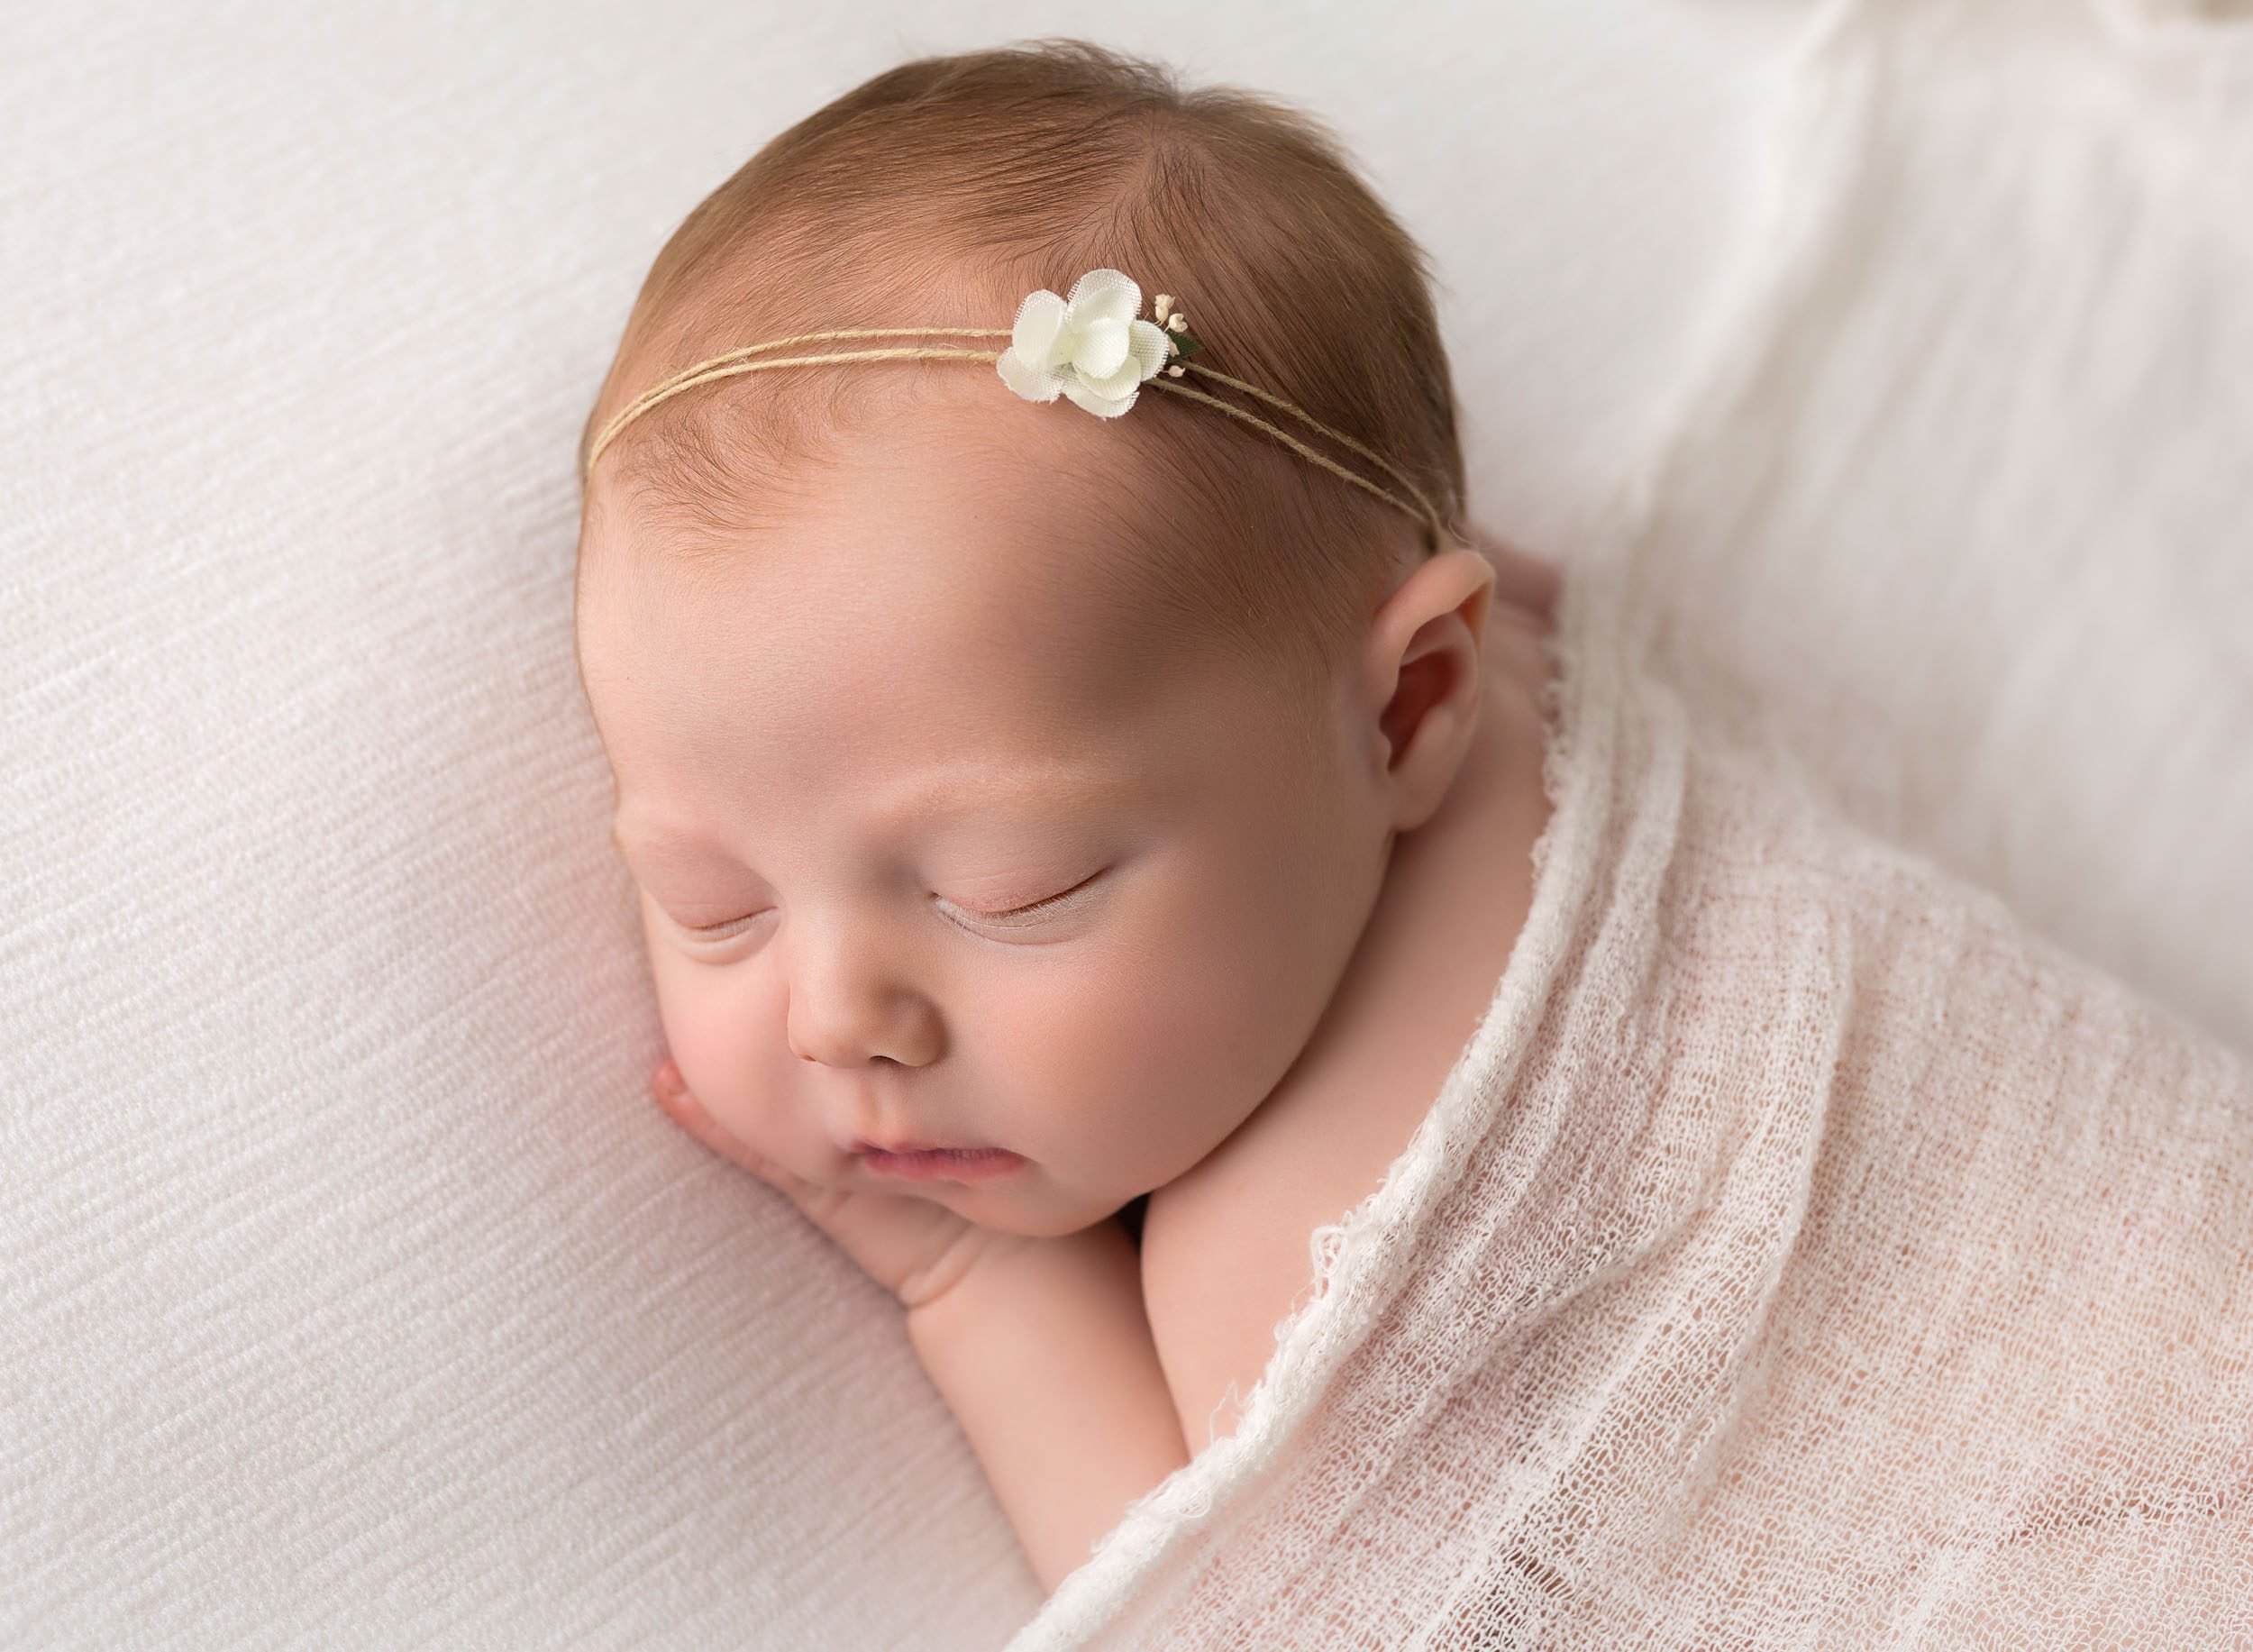 Newborn baby on white fabric